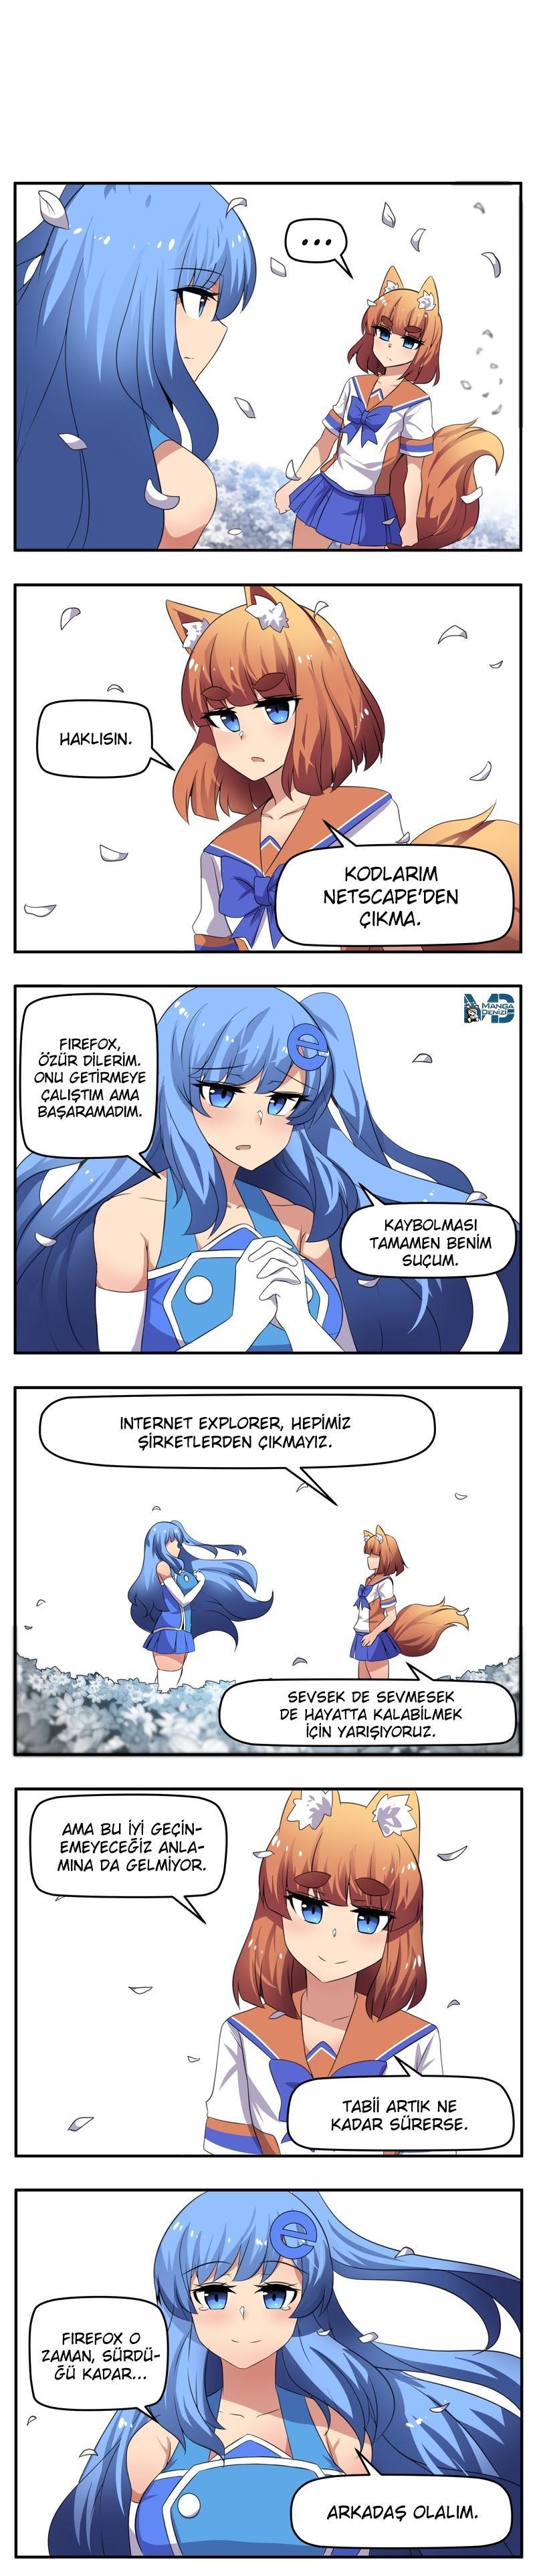 Internet Explorer mangasının 066 bölümünün 2. sayfasını okuyorsunuz.